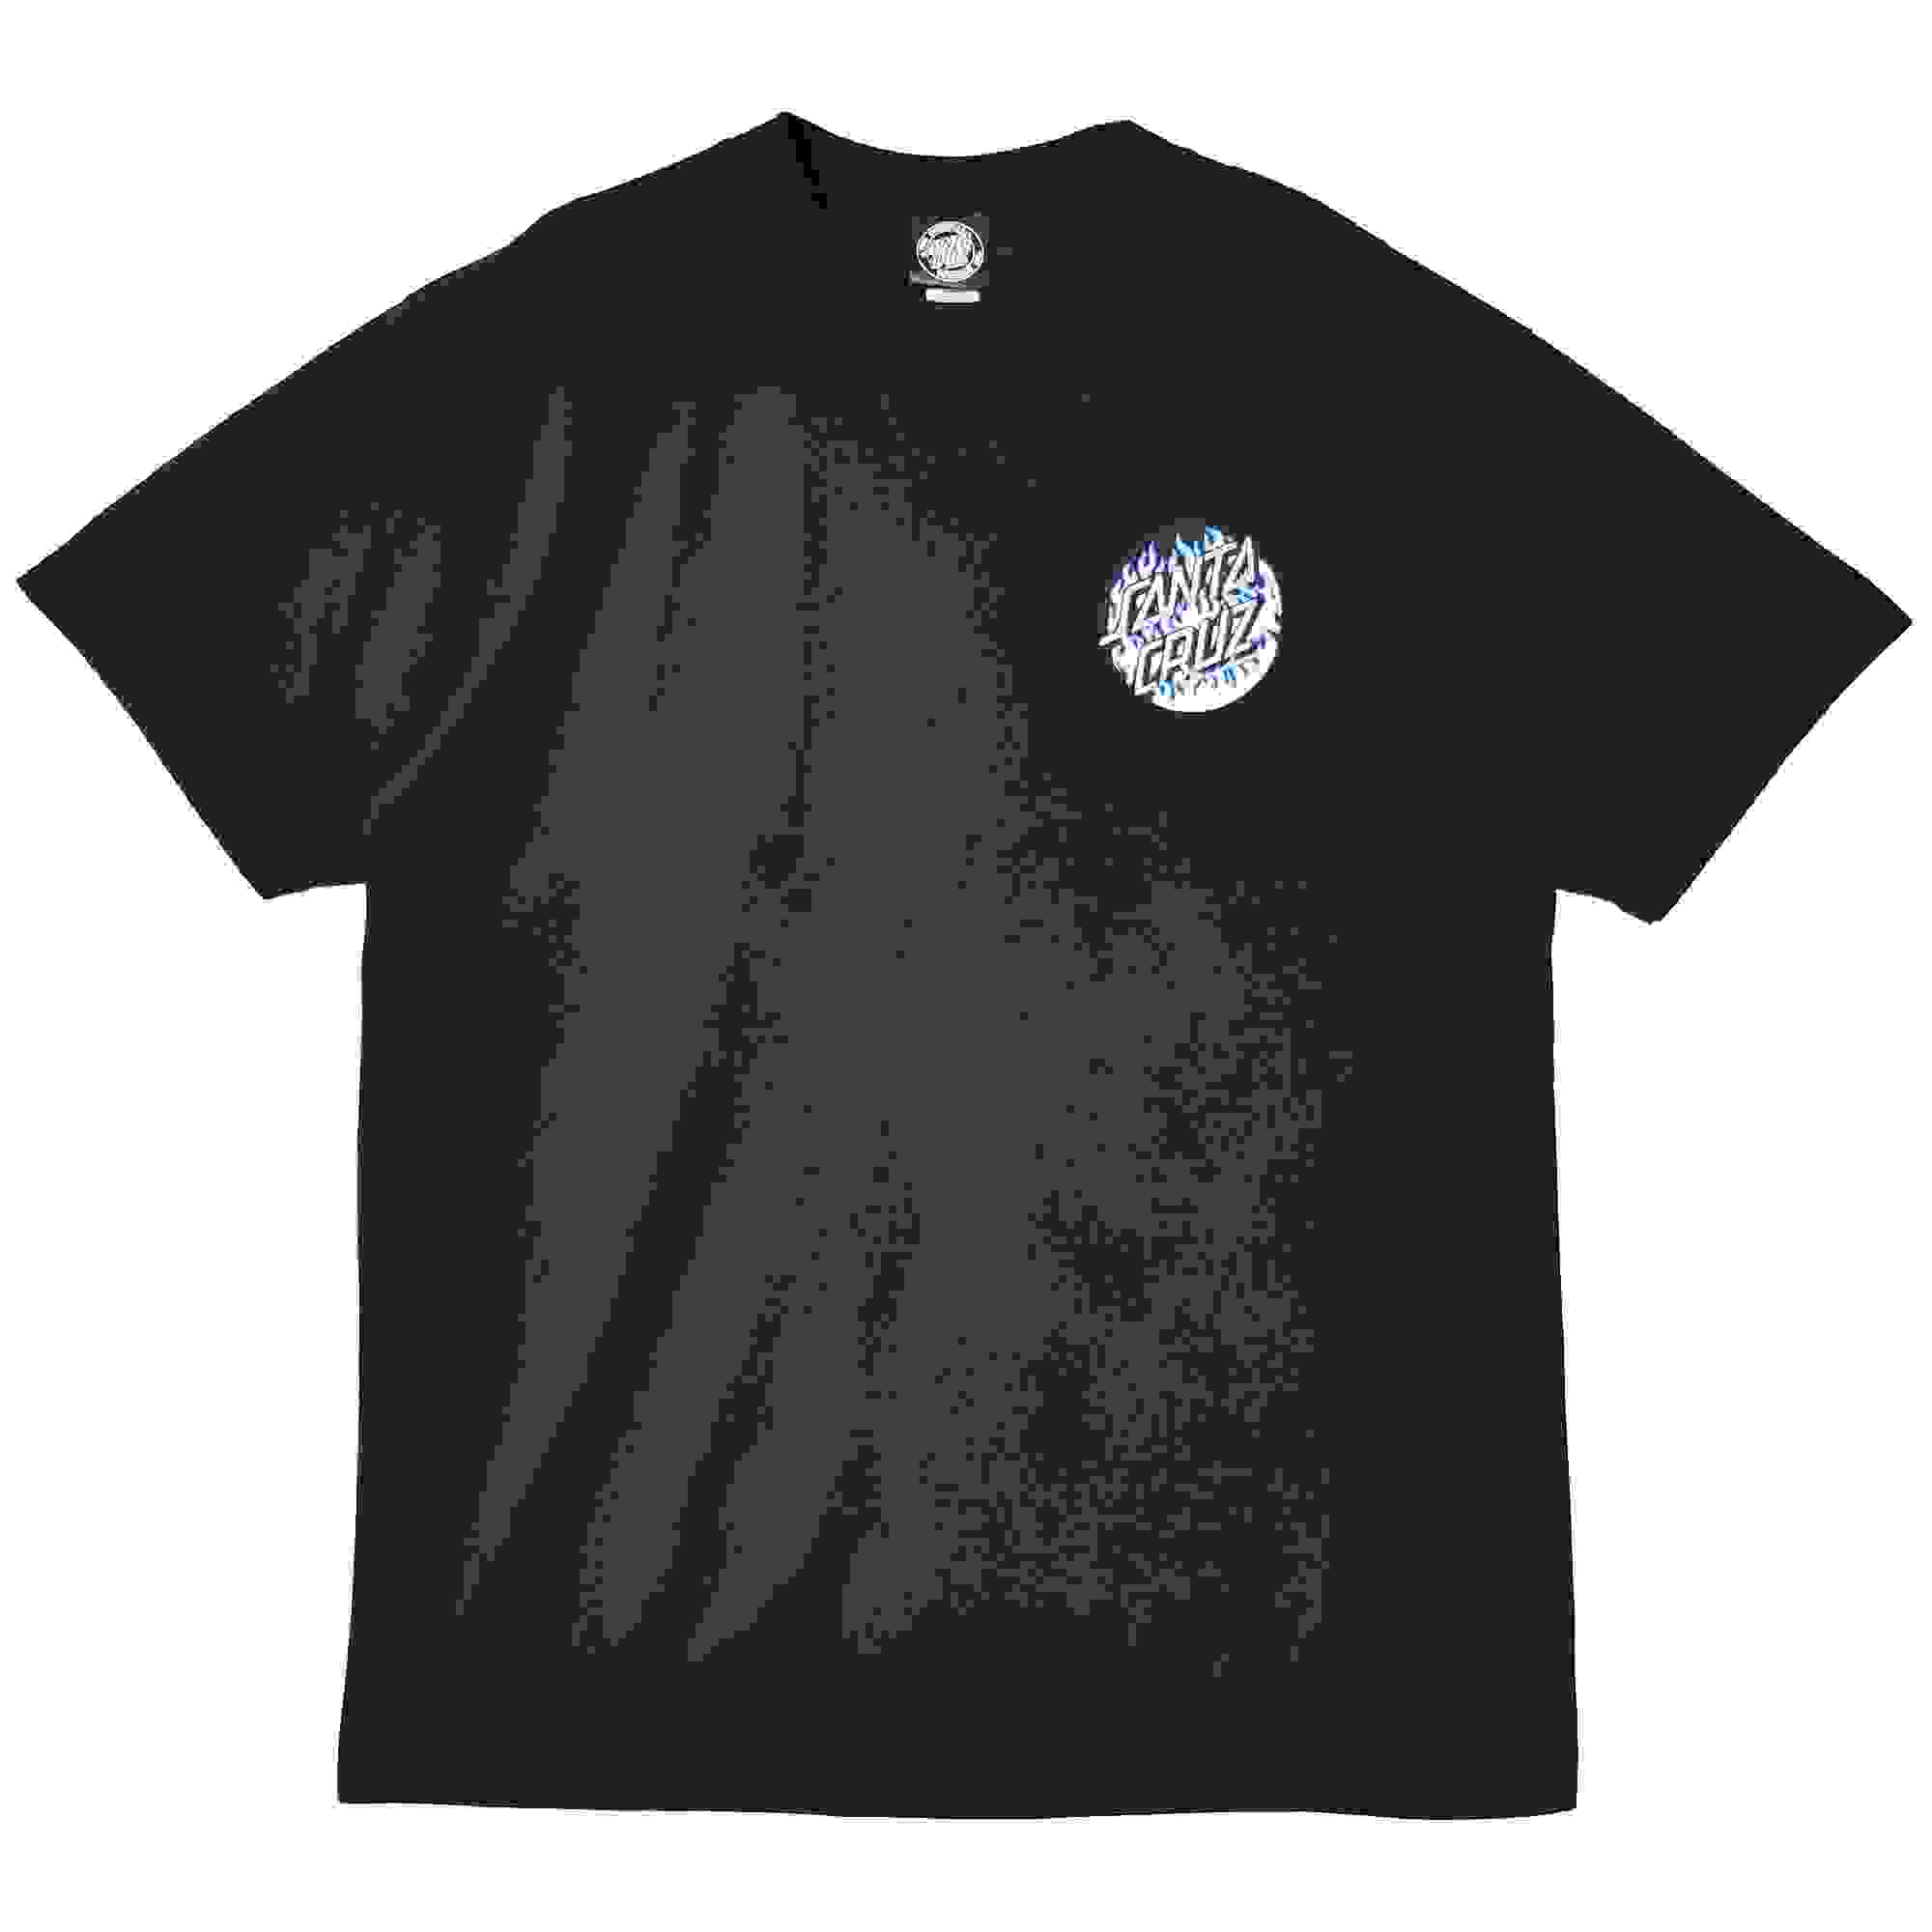 サンタクルーズ 半袖Tシャツ メンズ BLAZE DOT S/S REGULAR T-SHIRT SANTACRUZ 44155443 ブラック 黒  ネイビー 紺 tシャツ 半袖